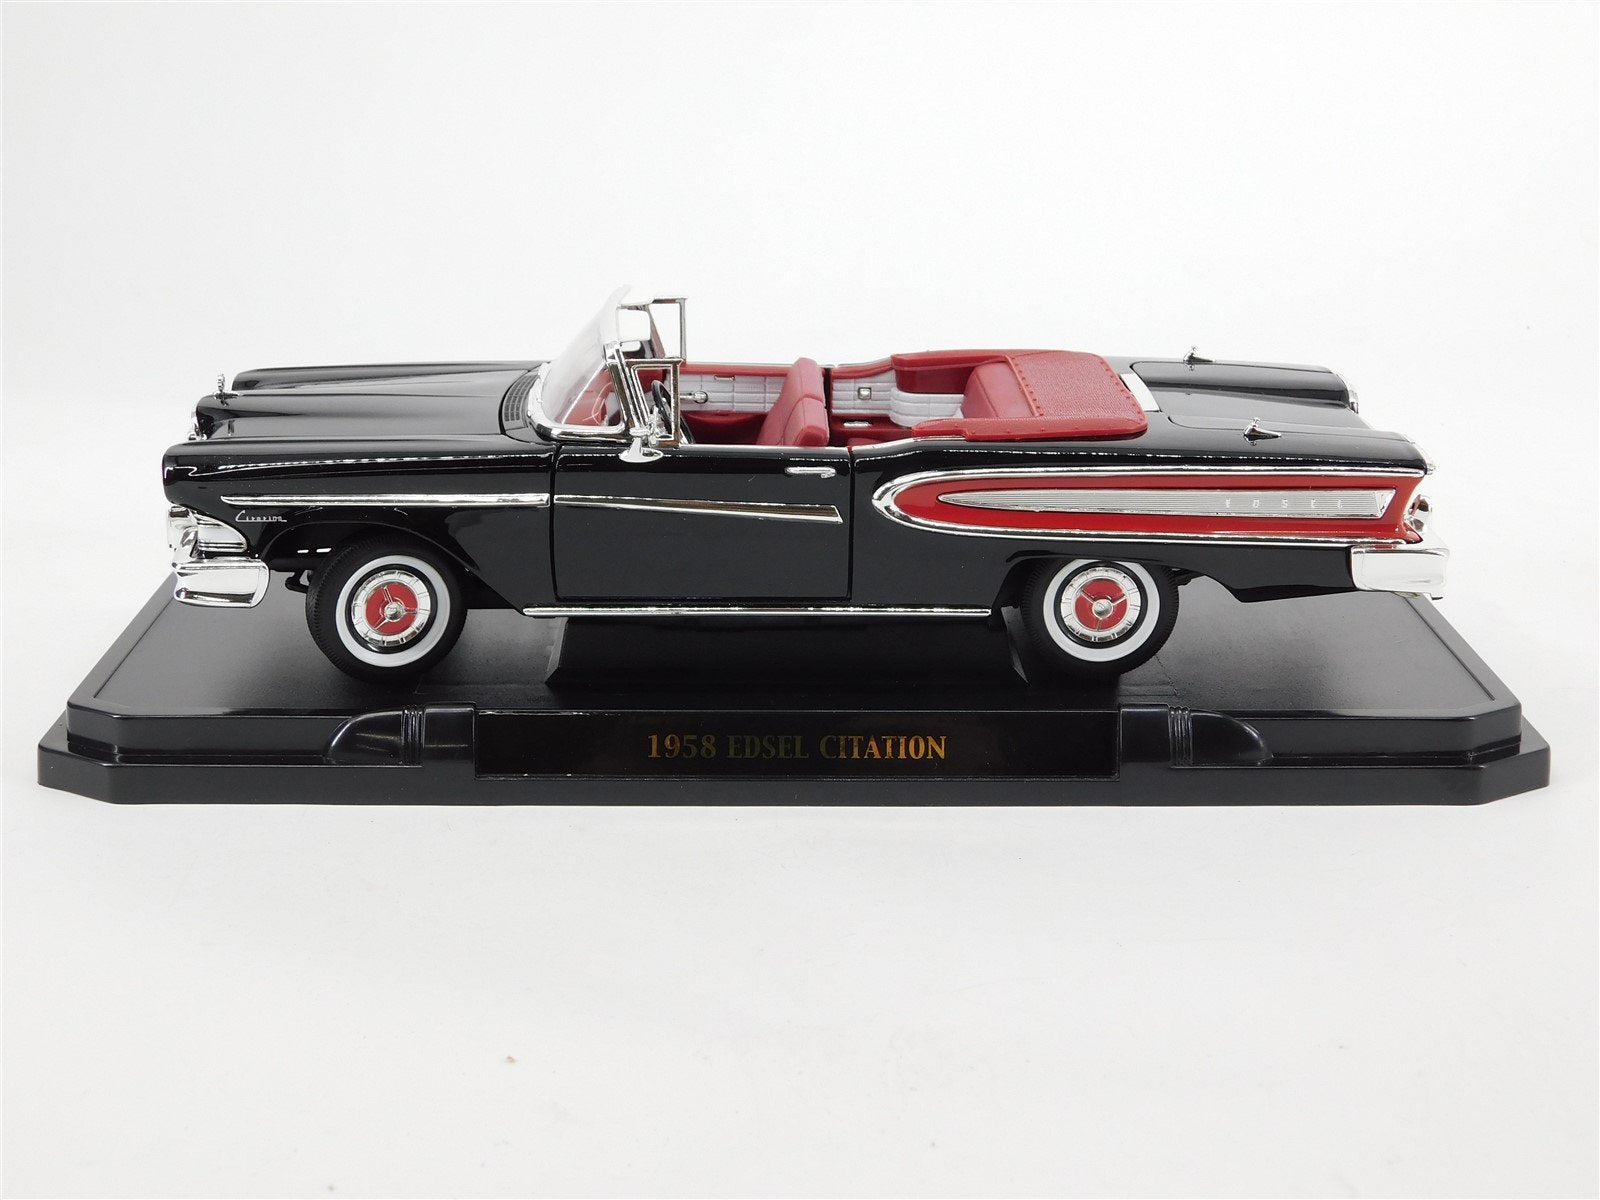 1:18 Scale Die-Cast Automobile 1958 Edsel Citation Convertible - Black/Red